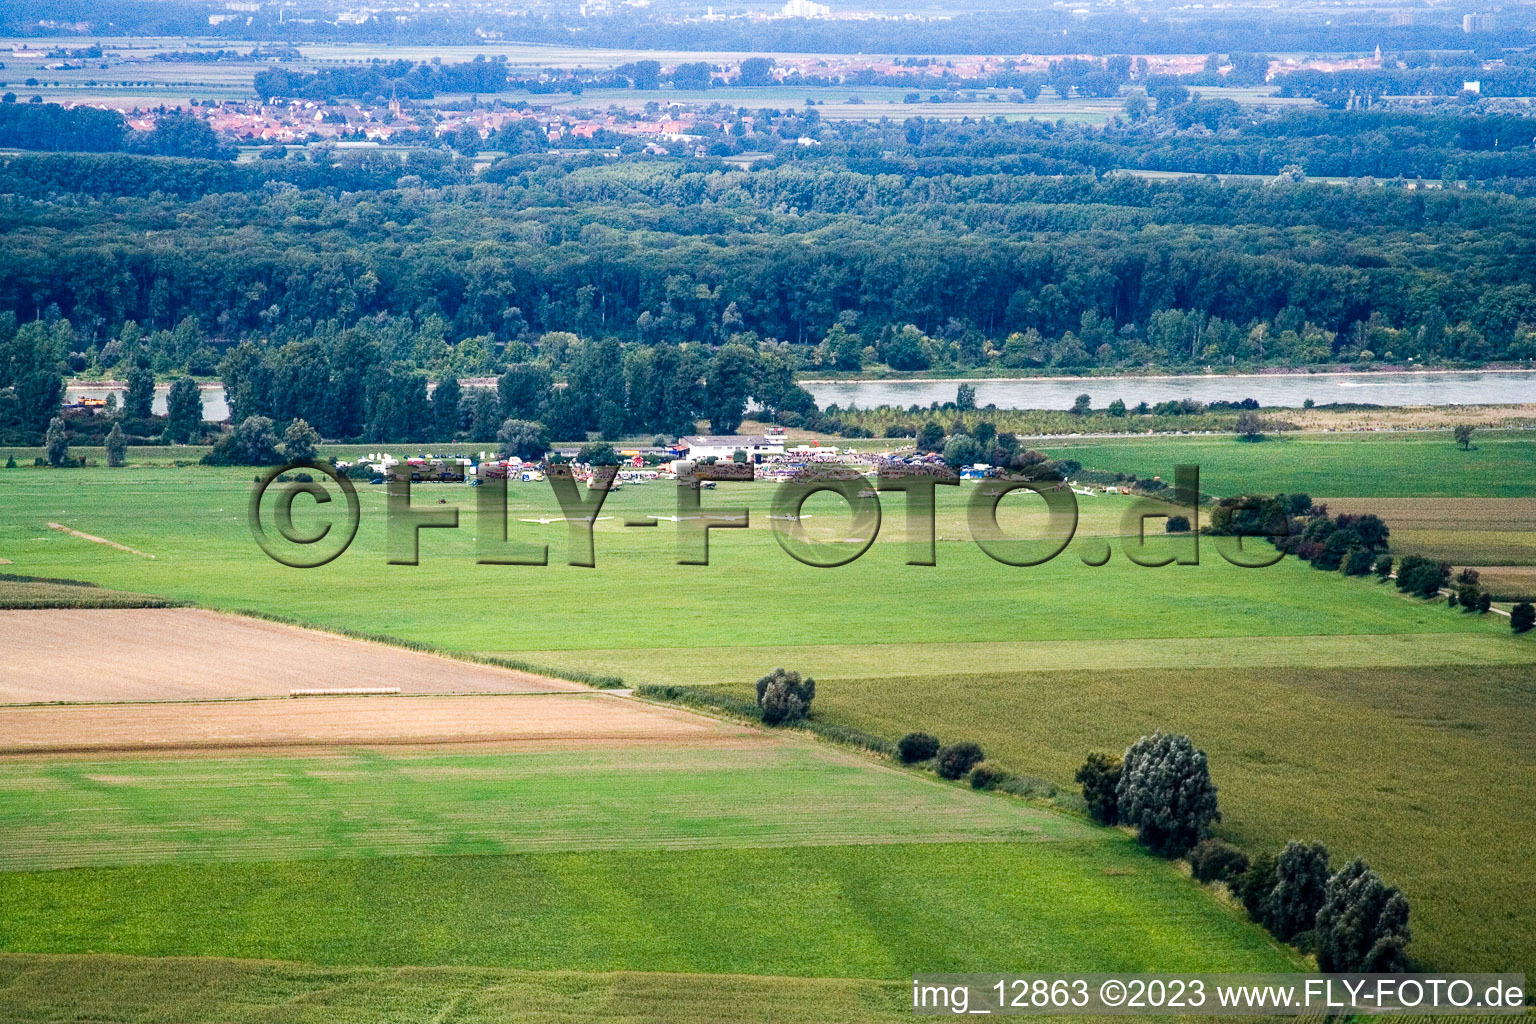 Vue aérienne de Festival de l'aéroport de Herrenteich à Ketsch dans le département Bade-Wurtemberg, Allemagne